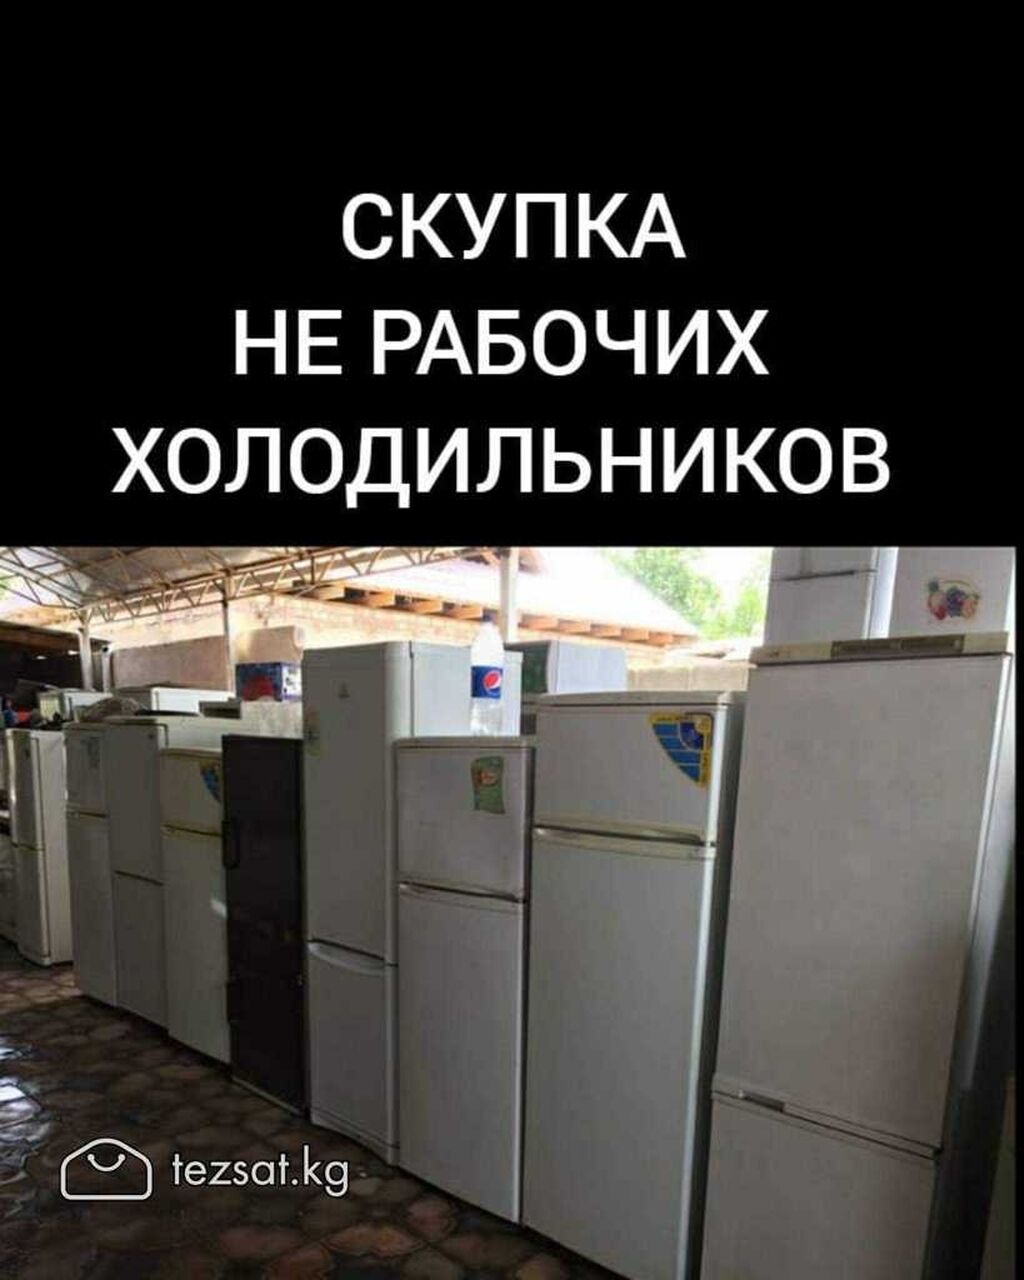 Скупка холодильников